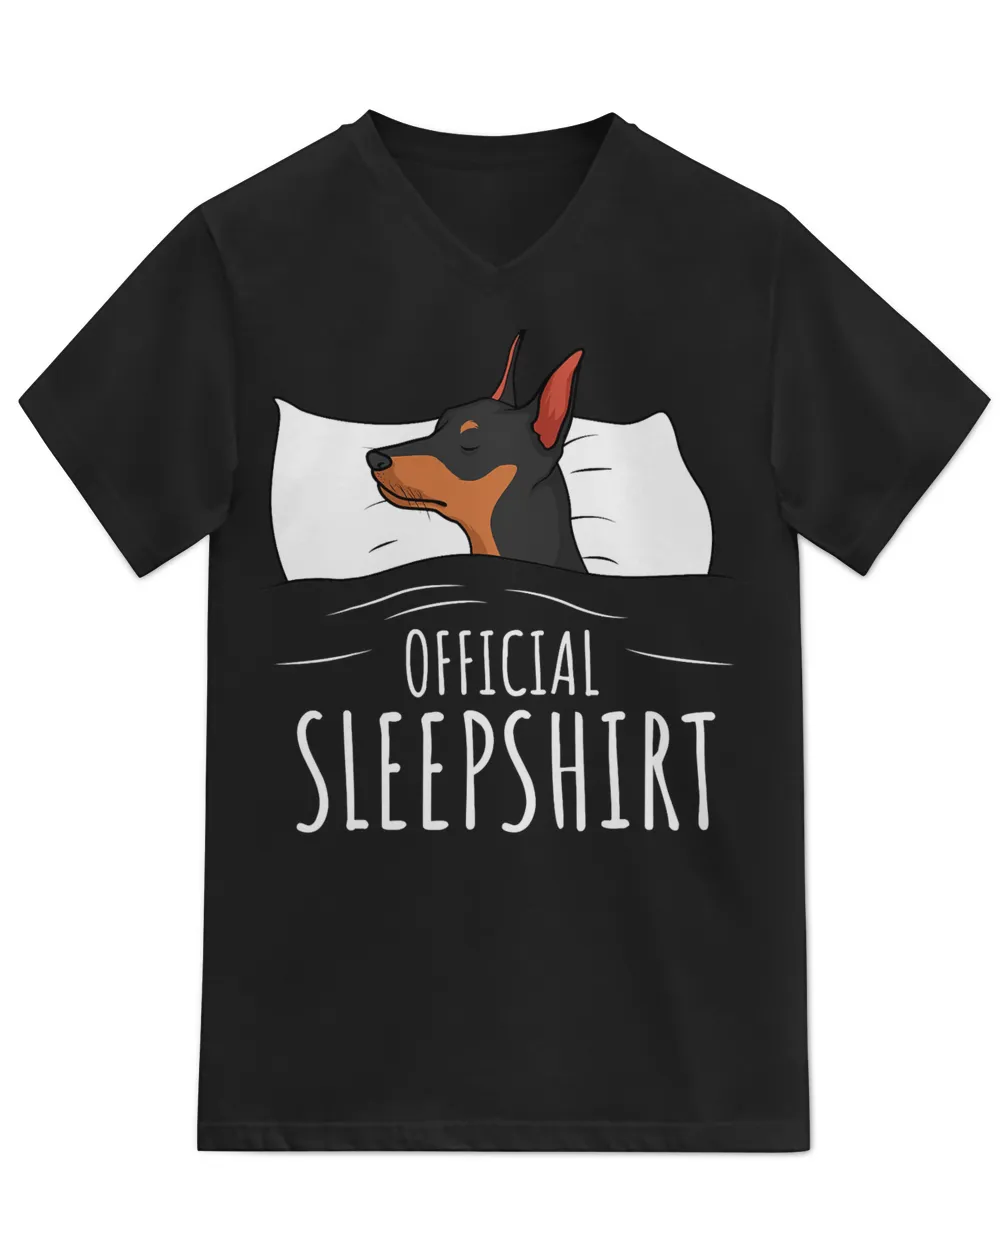 Miniature Pinscher Min Pin Dog Official Sleepshirt T-Shirt